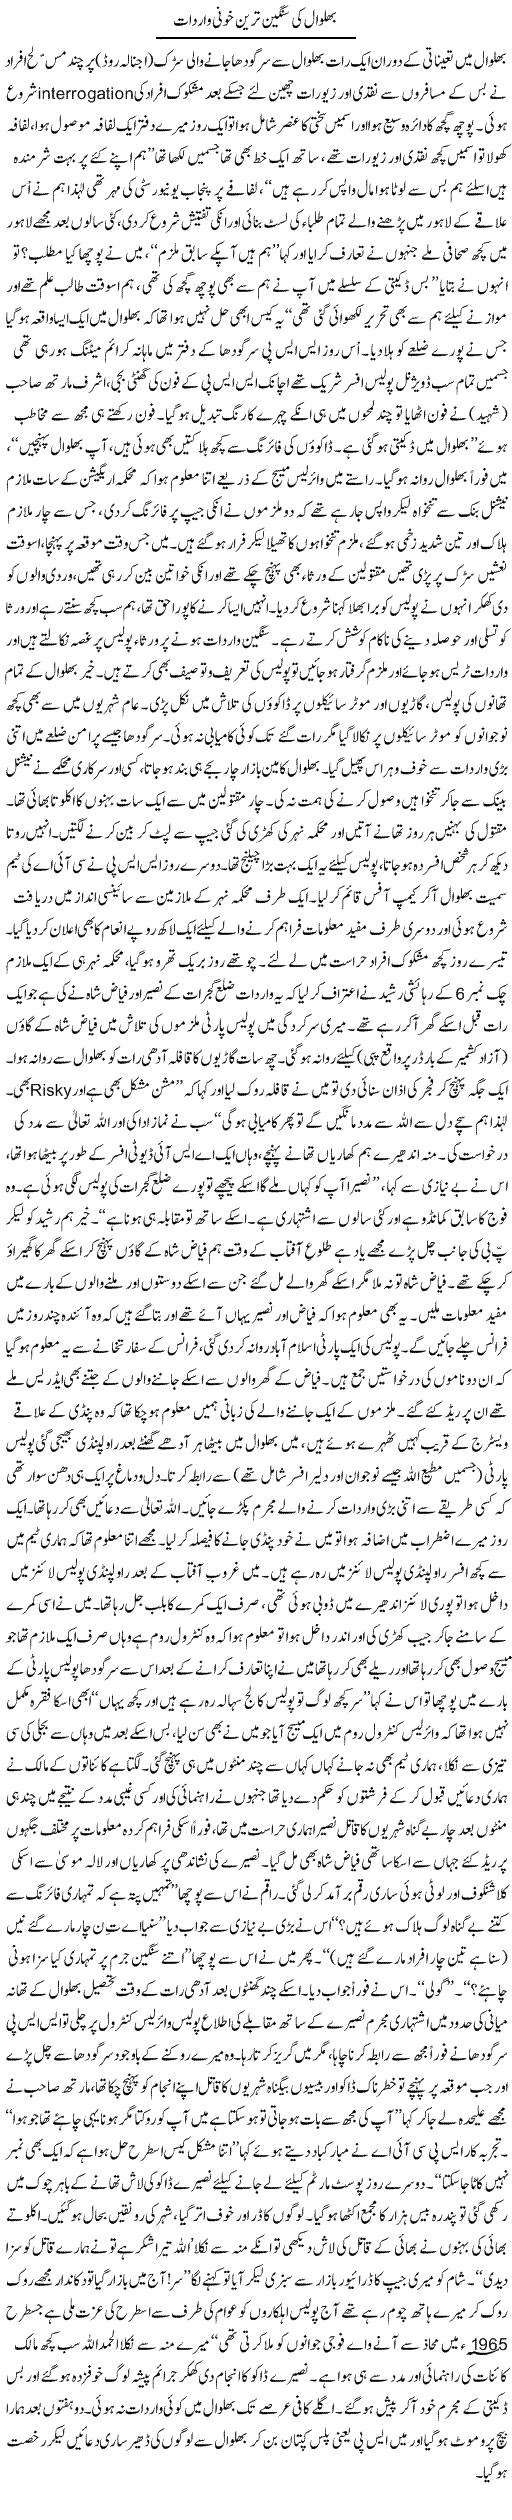 Bhalwal Ki Sangeen Tareen Khooni Waardaat | Zulfiqar Ahmed Cheema | Daily Urdu Columns